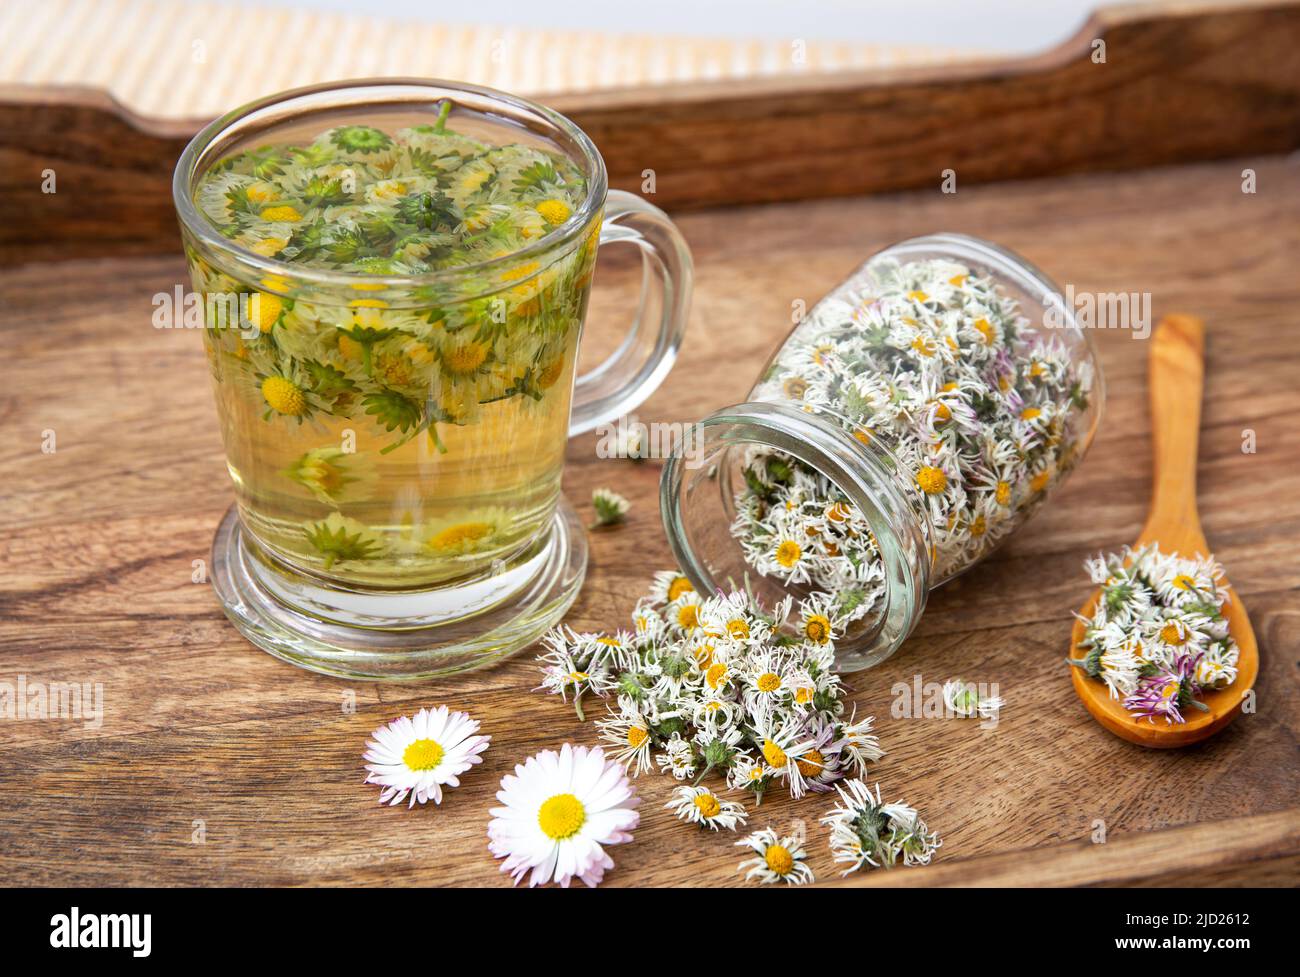 Planta medicinal seca a base de plantas comunes Daisy, también conocida como Bellis perennis. Flores secas en tarro de vidrio y té de hierbas en vidrio, todavía en el interior Foto de stock